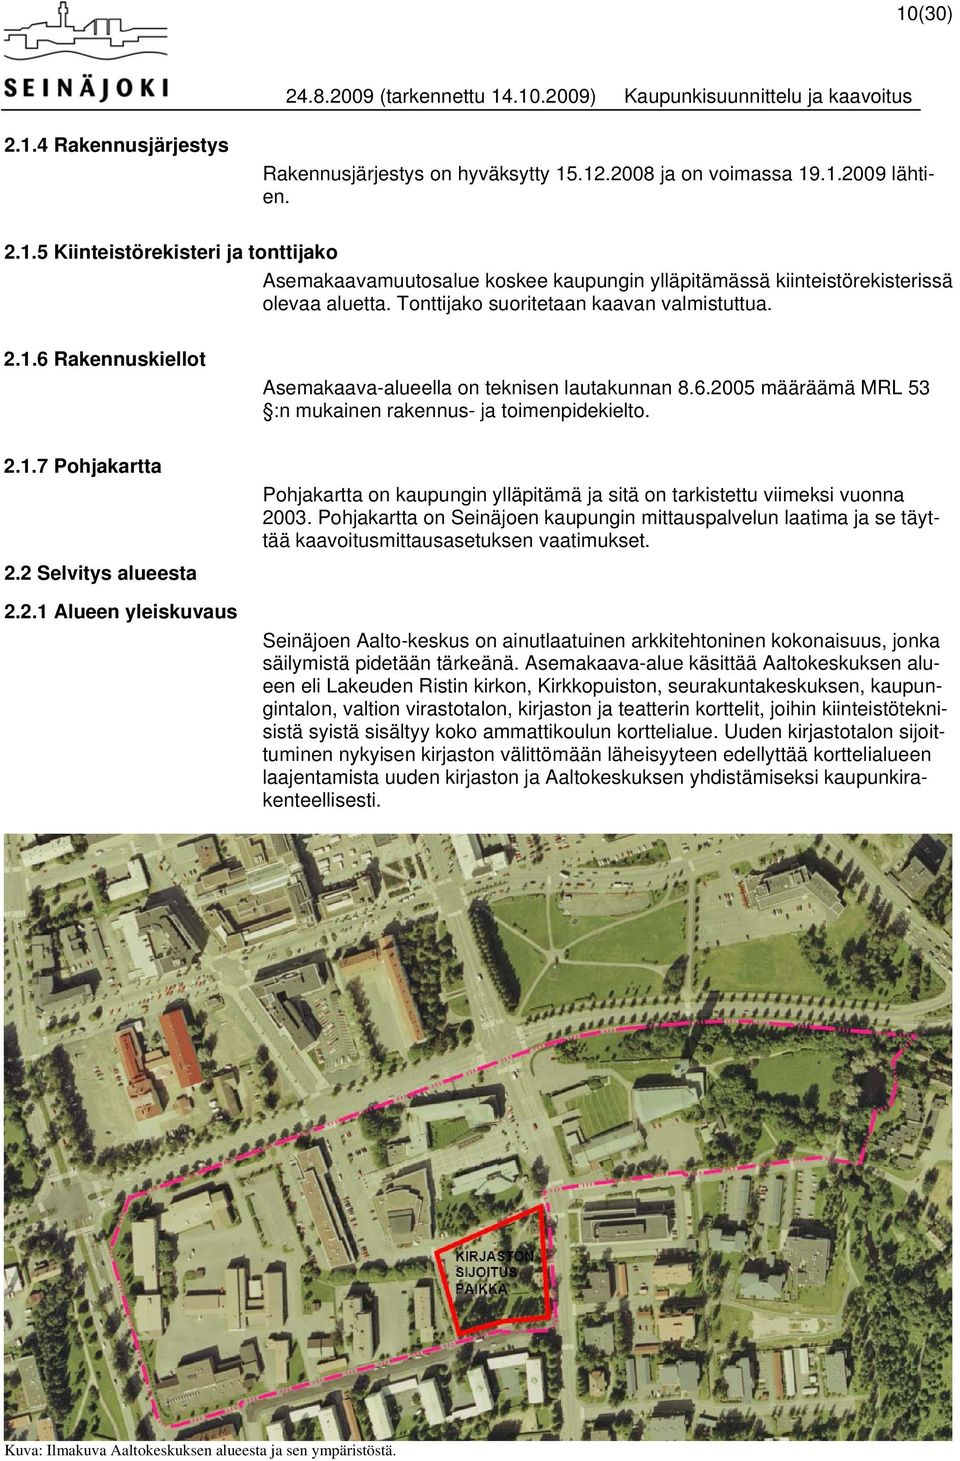 Pohjakartta on kaupungin ylläpitämä ja sitä on tarkistettu viimeksi vuonna 2003. Pohjakartta on Seinäjoen kaupungin mittauspalvelun laatima ja se täyttää kaavoitusmittausasetuksen vaatimukset.